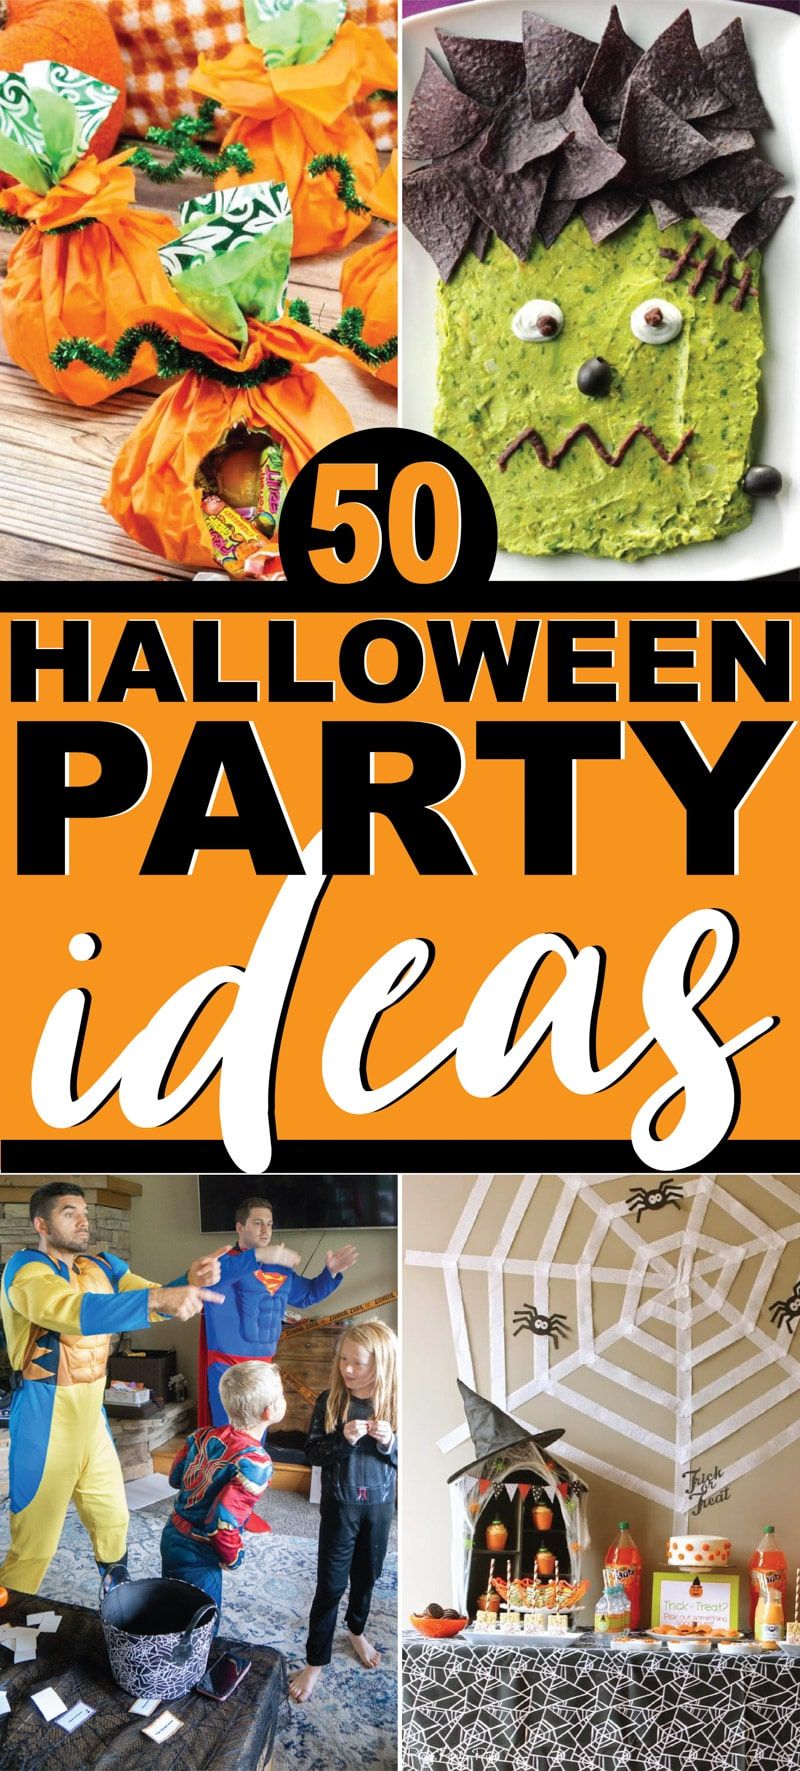 A melhor coleção de ideias para festas de Halloween para todas as idades - adultos, crianças e adolescentes!